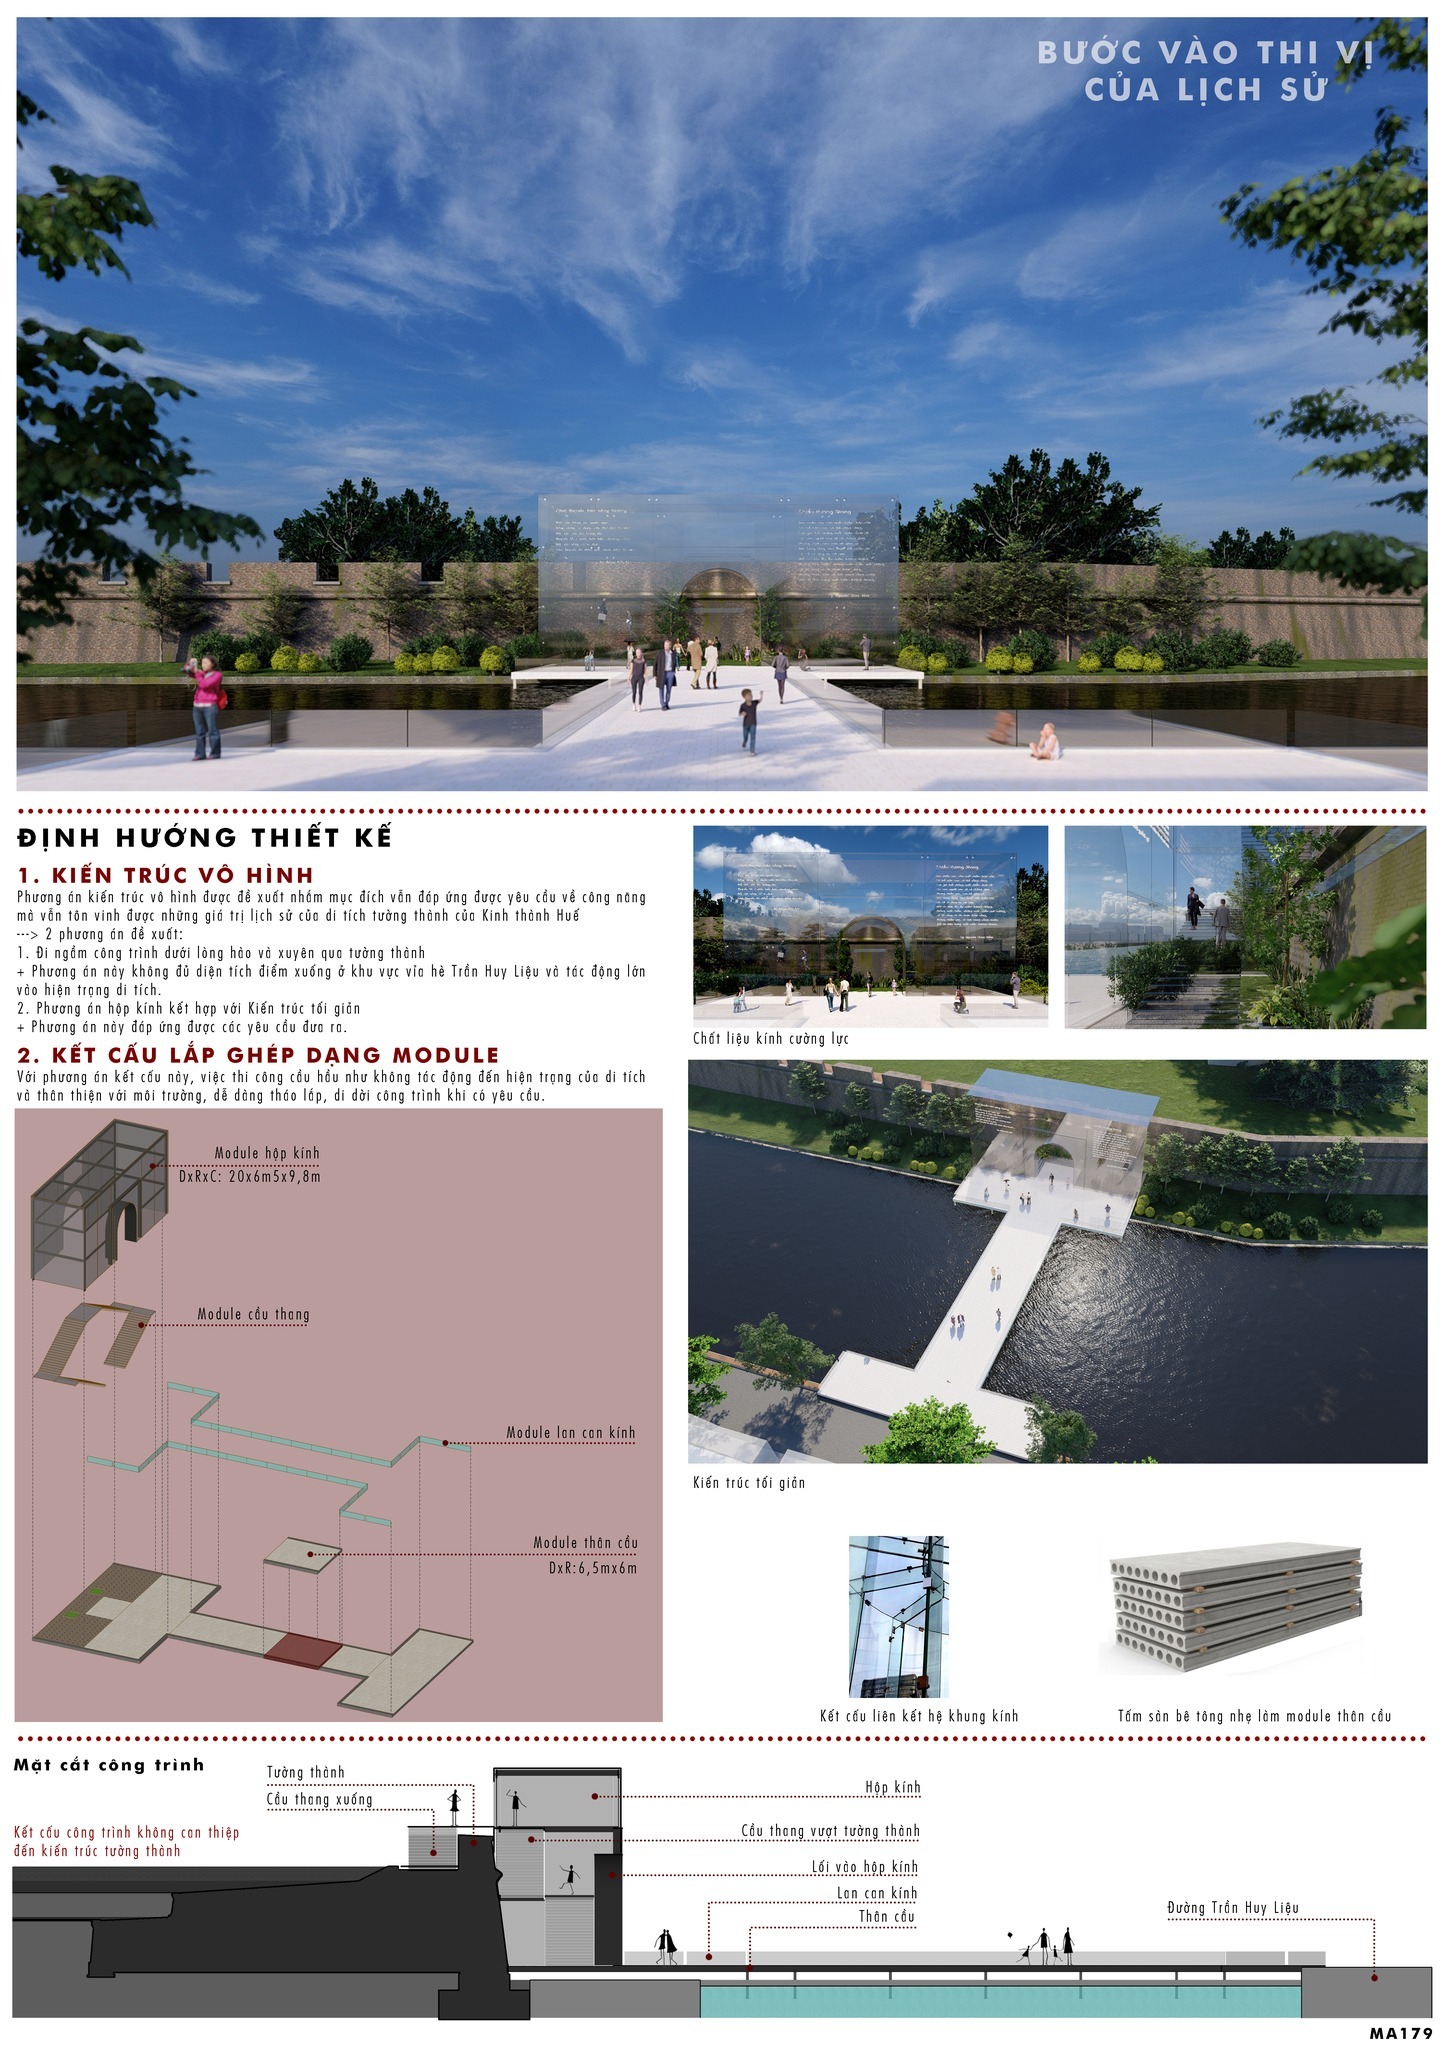 Trao giải cuộc thi ‘Ý tưởng thiết kế cầu đi bộ vượt qua Hộ Thành Hào nối Thượng thành’ - 5